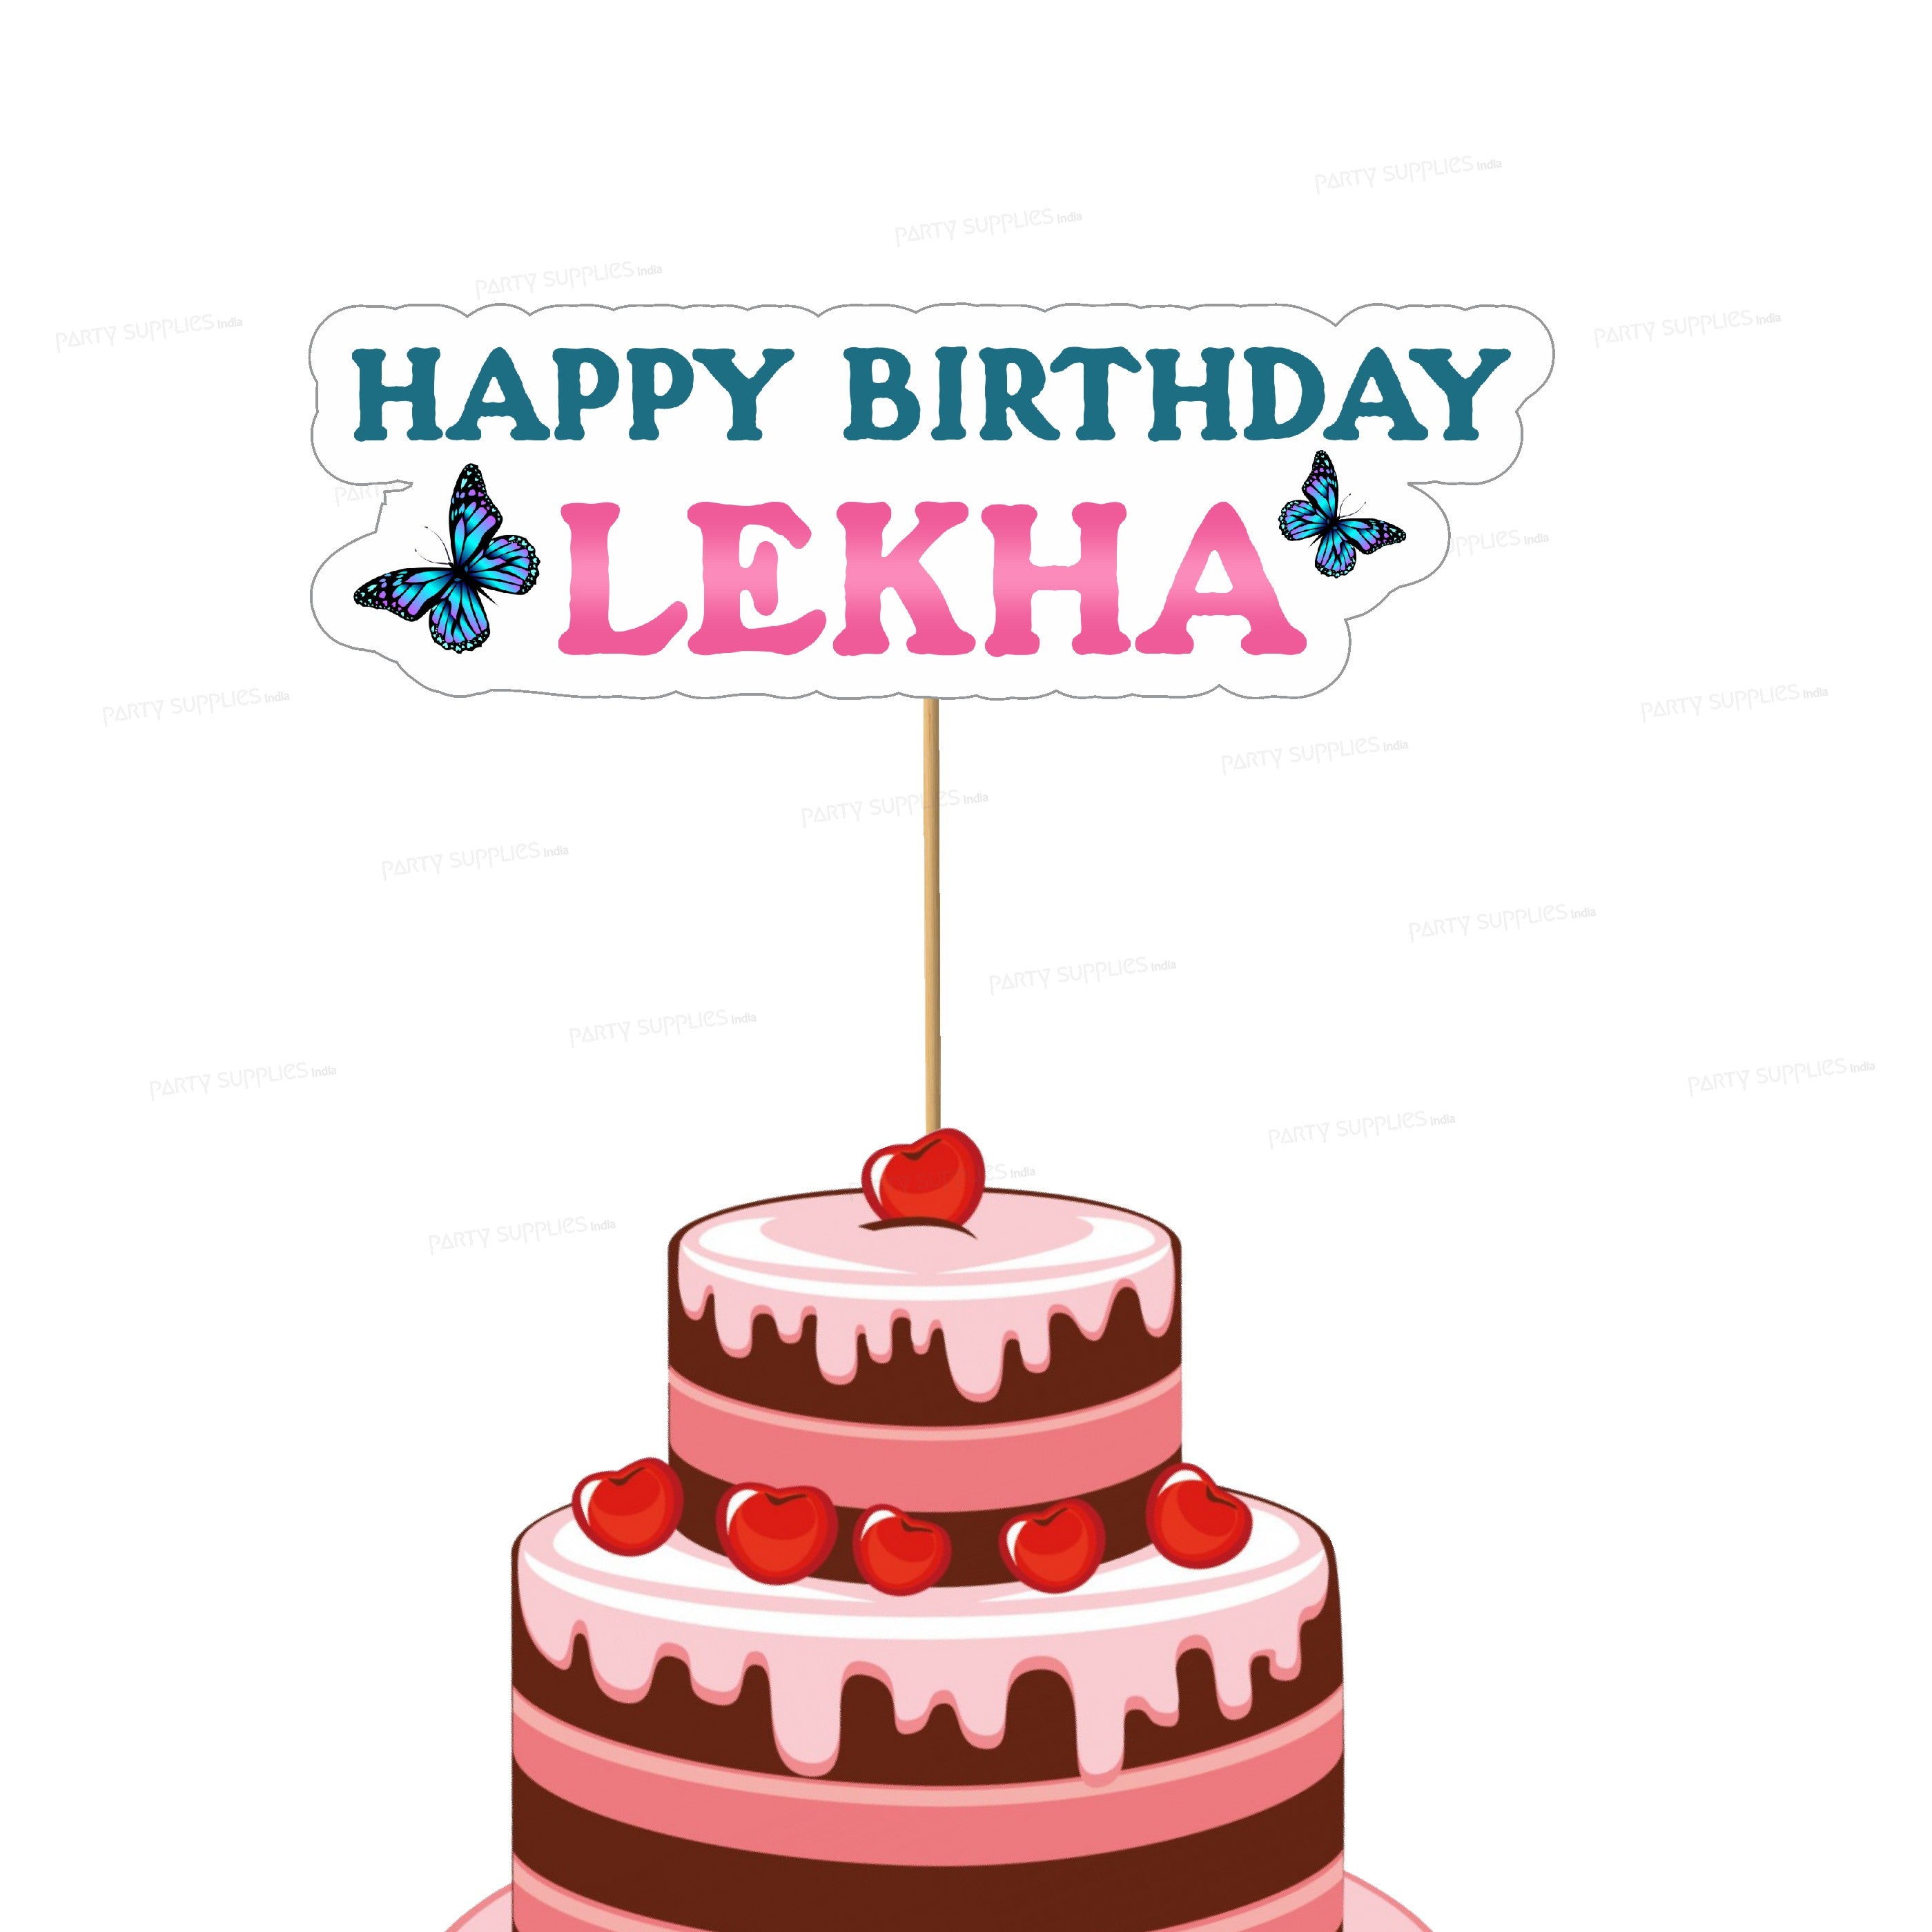 happy birthday Rekha song - Rekha Birthday Video song - Happy birthday to  you Rekha - YouTube